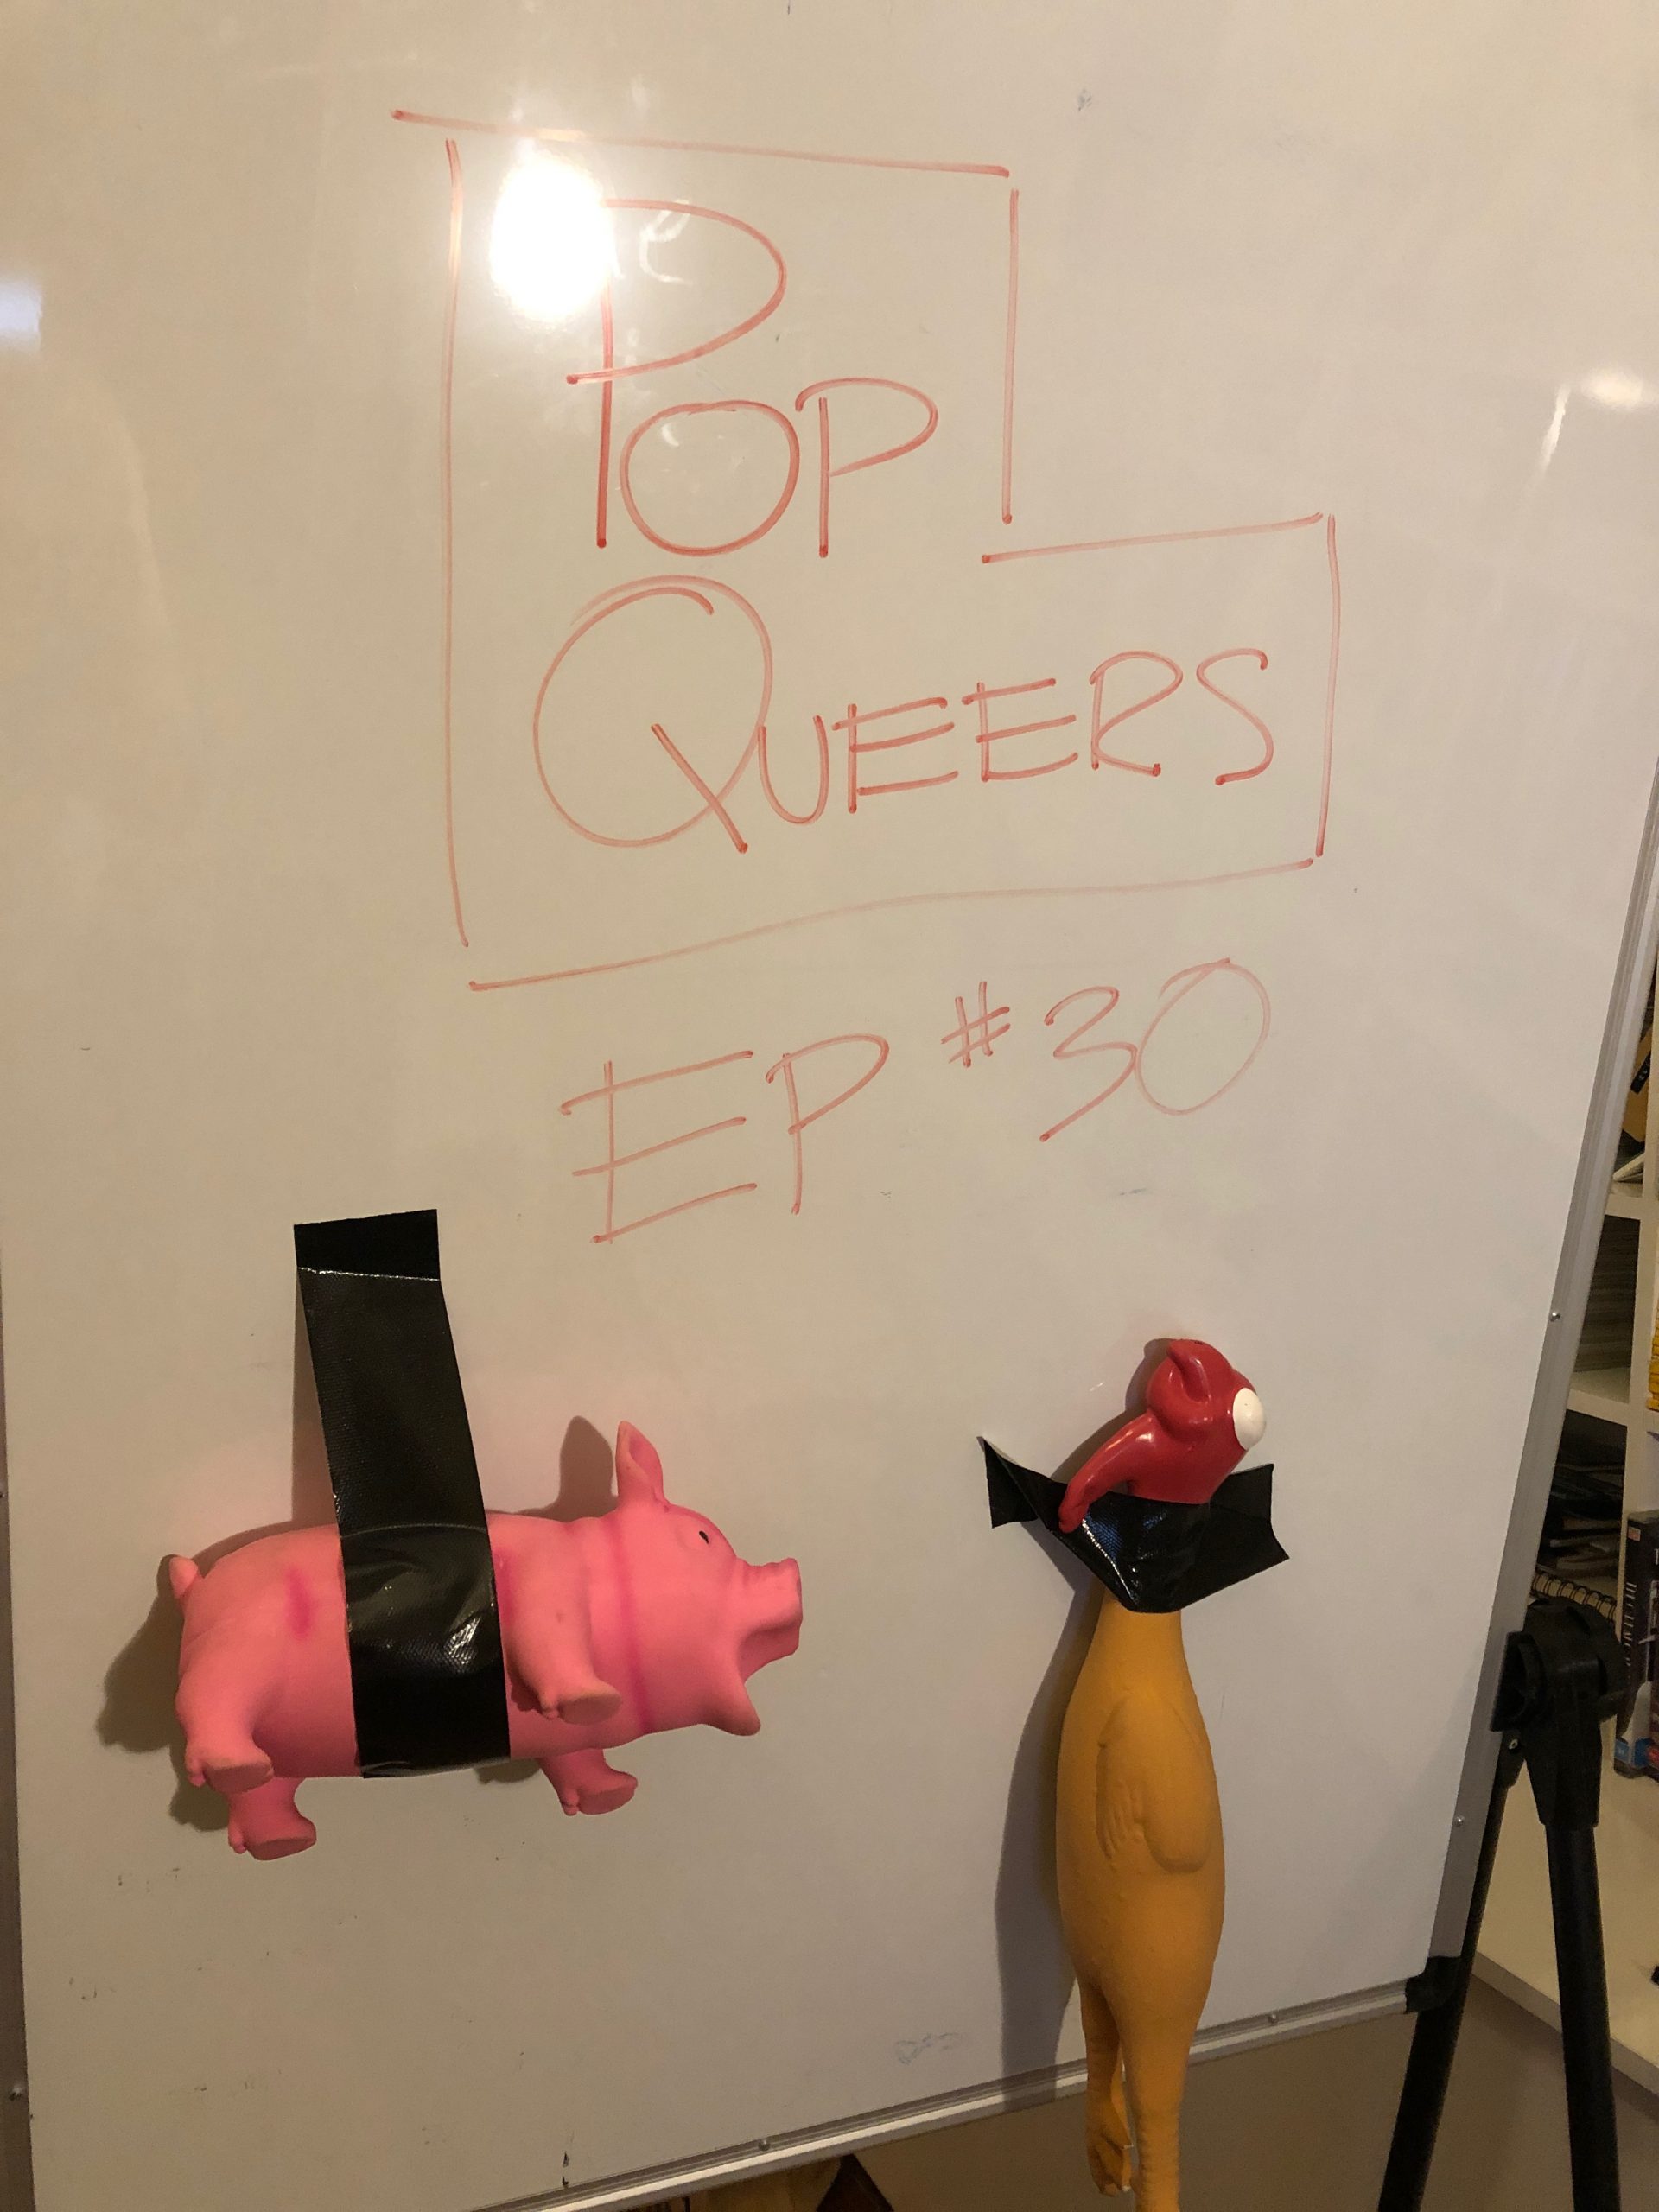 Pop Queers: Ep 30: Clayton Wimshurst vs Tamzyn Bee-Leska (Pop Quaranteers Episode 5)